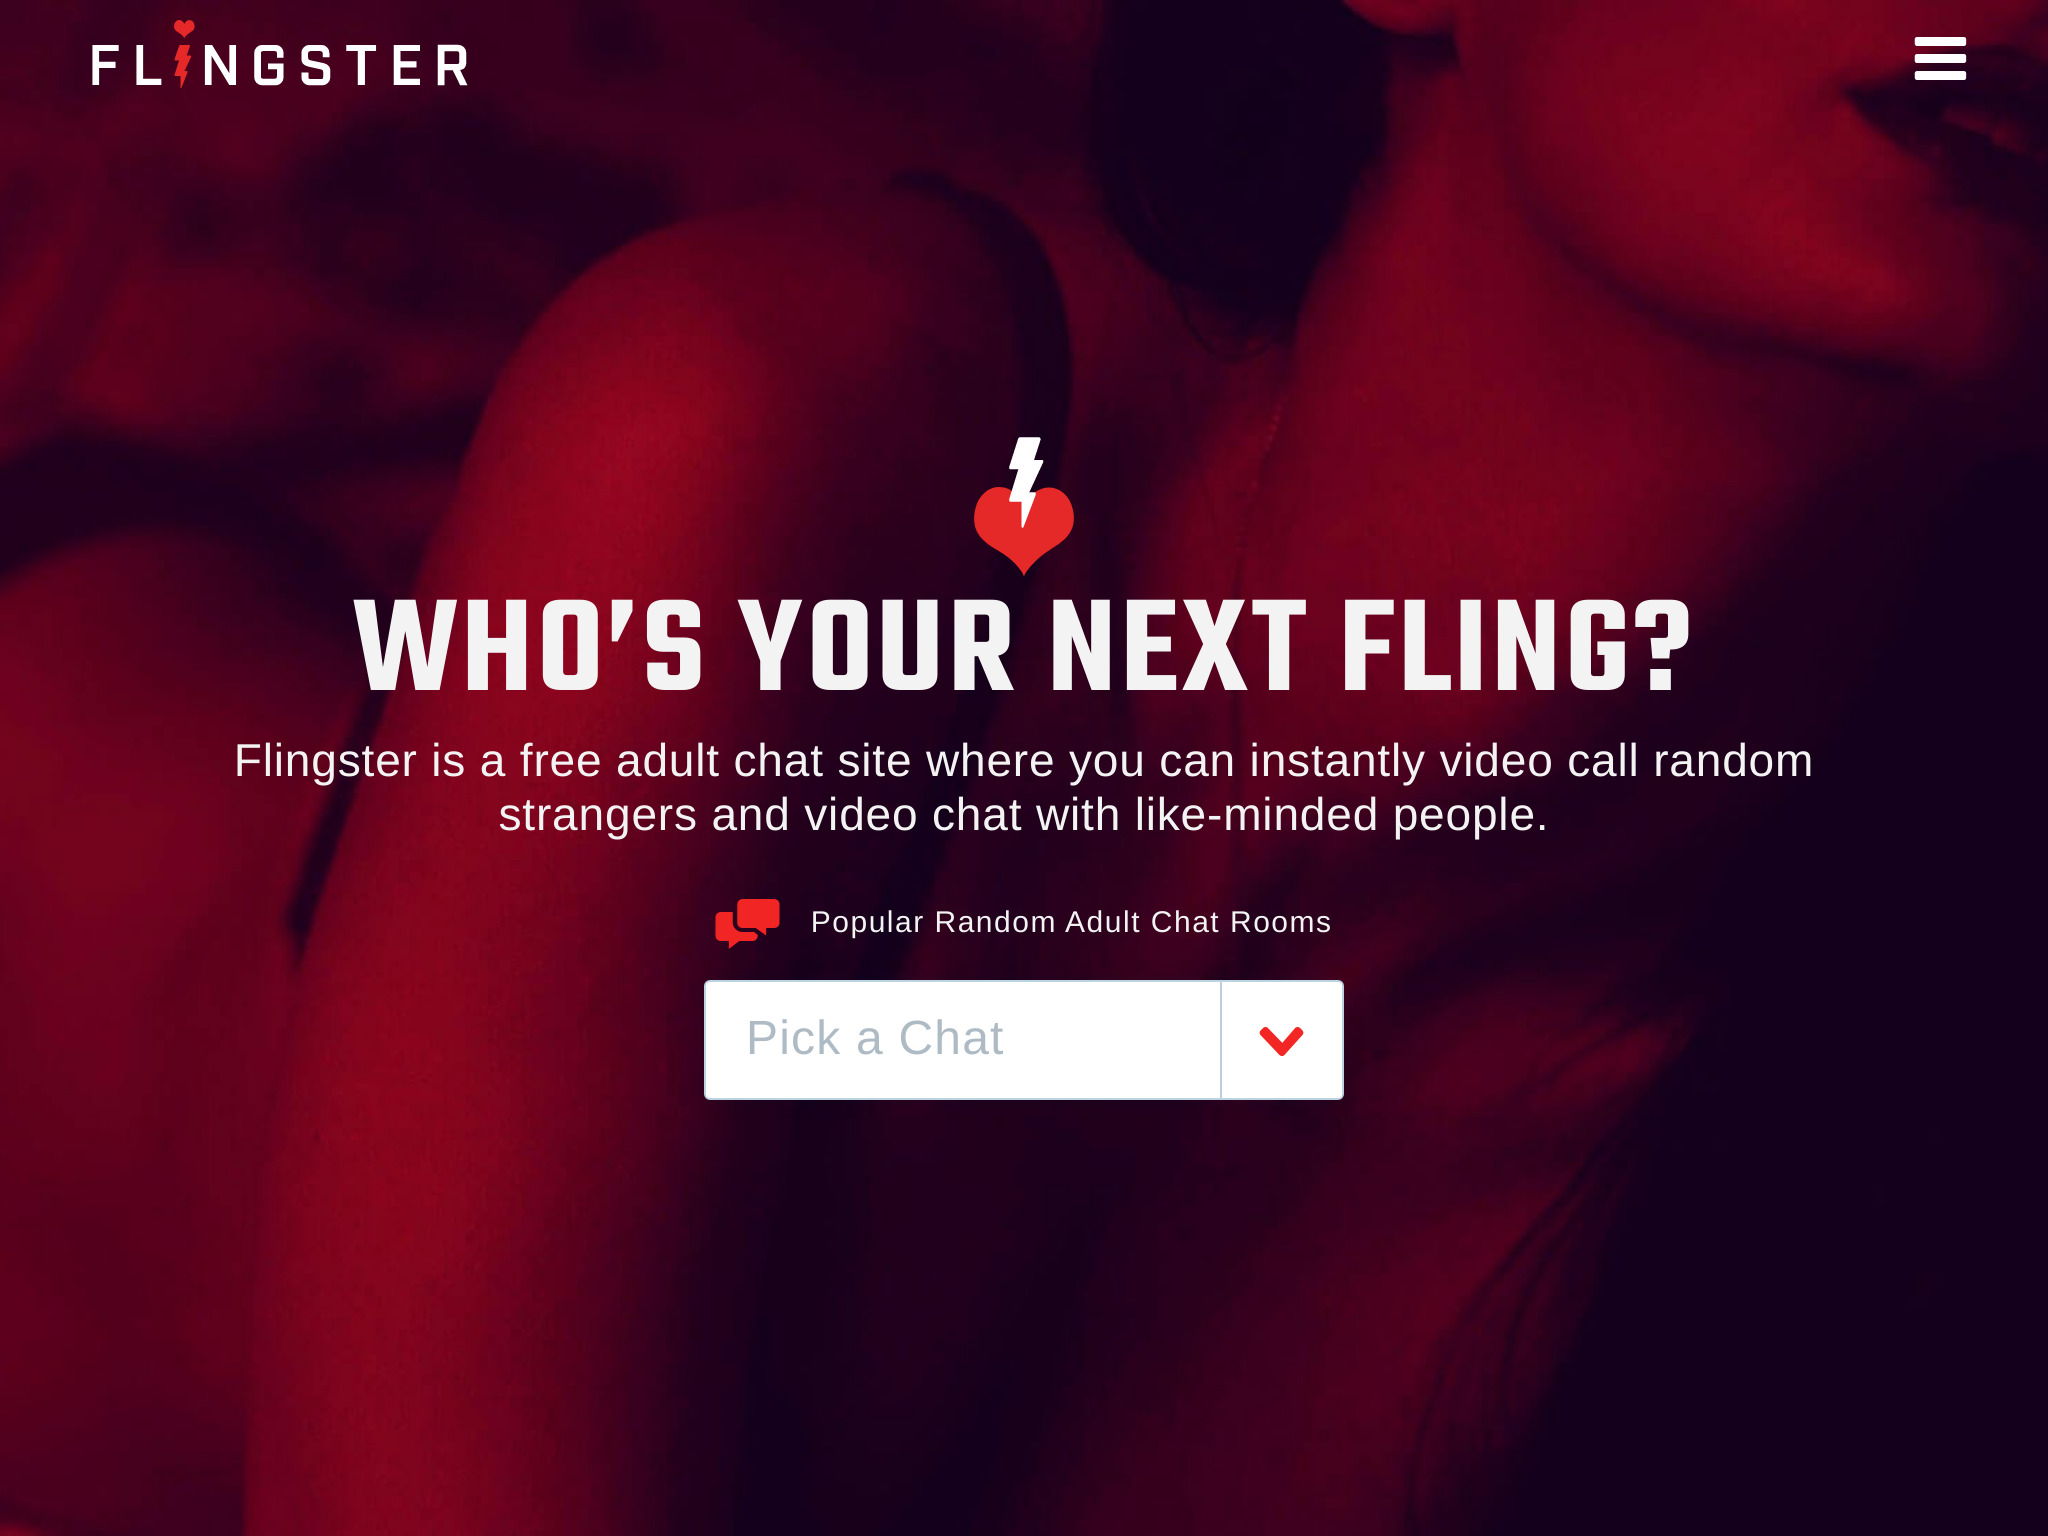 Flingster Review: Is het een goede keuze voor online dating in 2023?